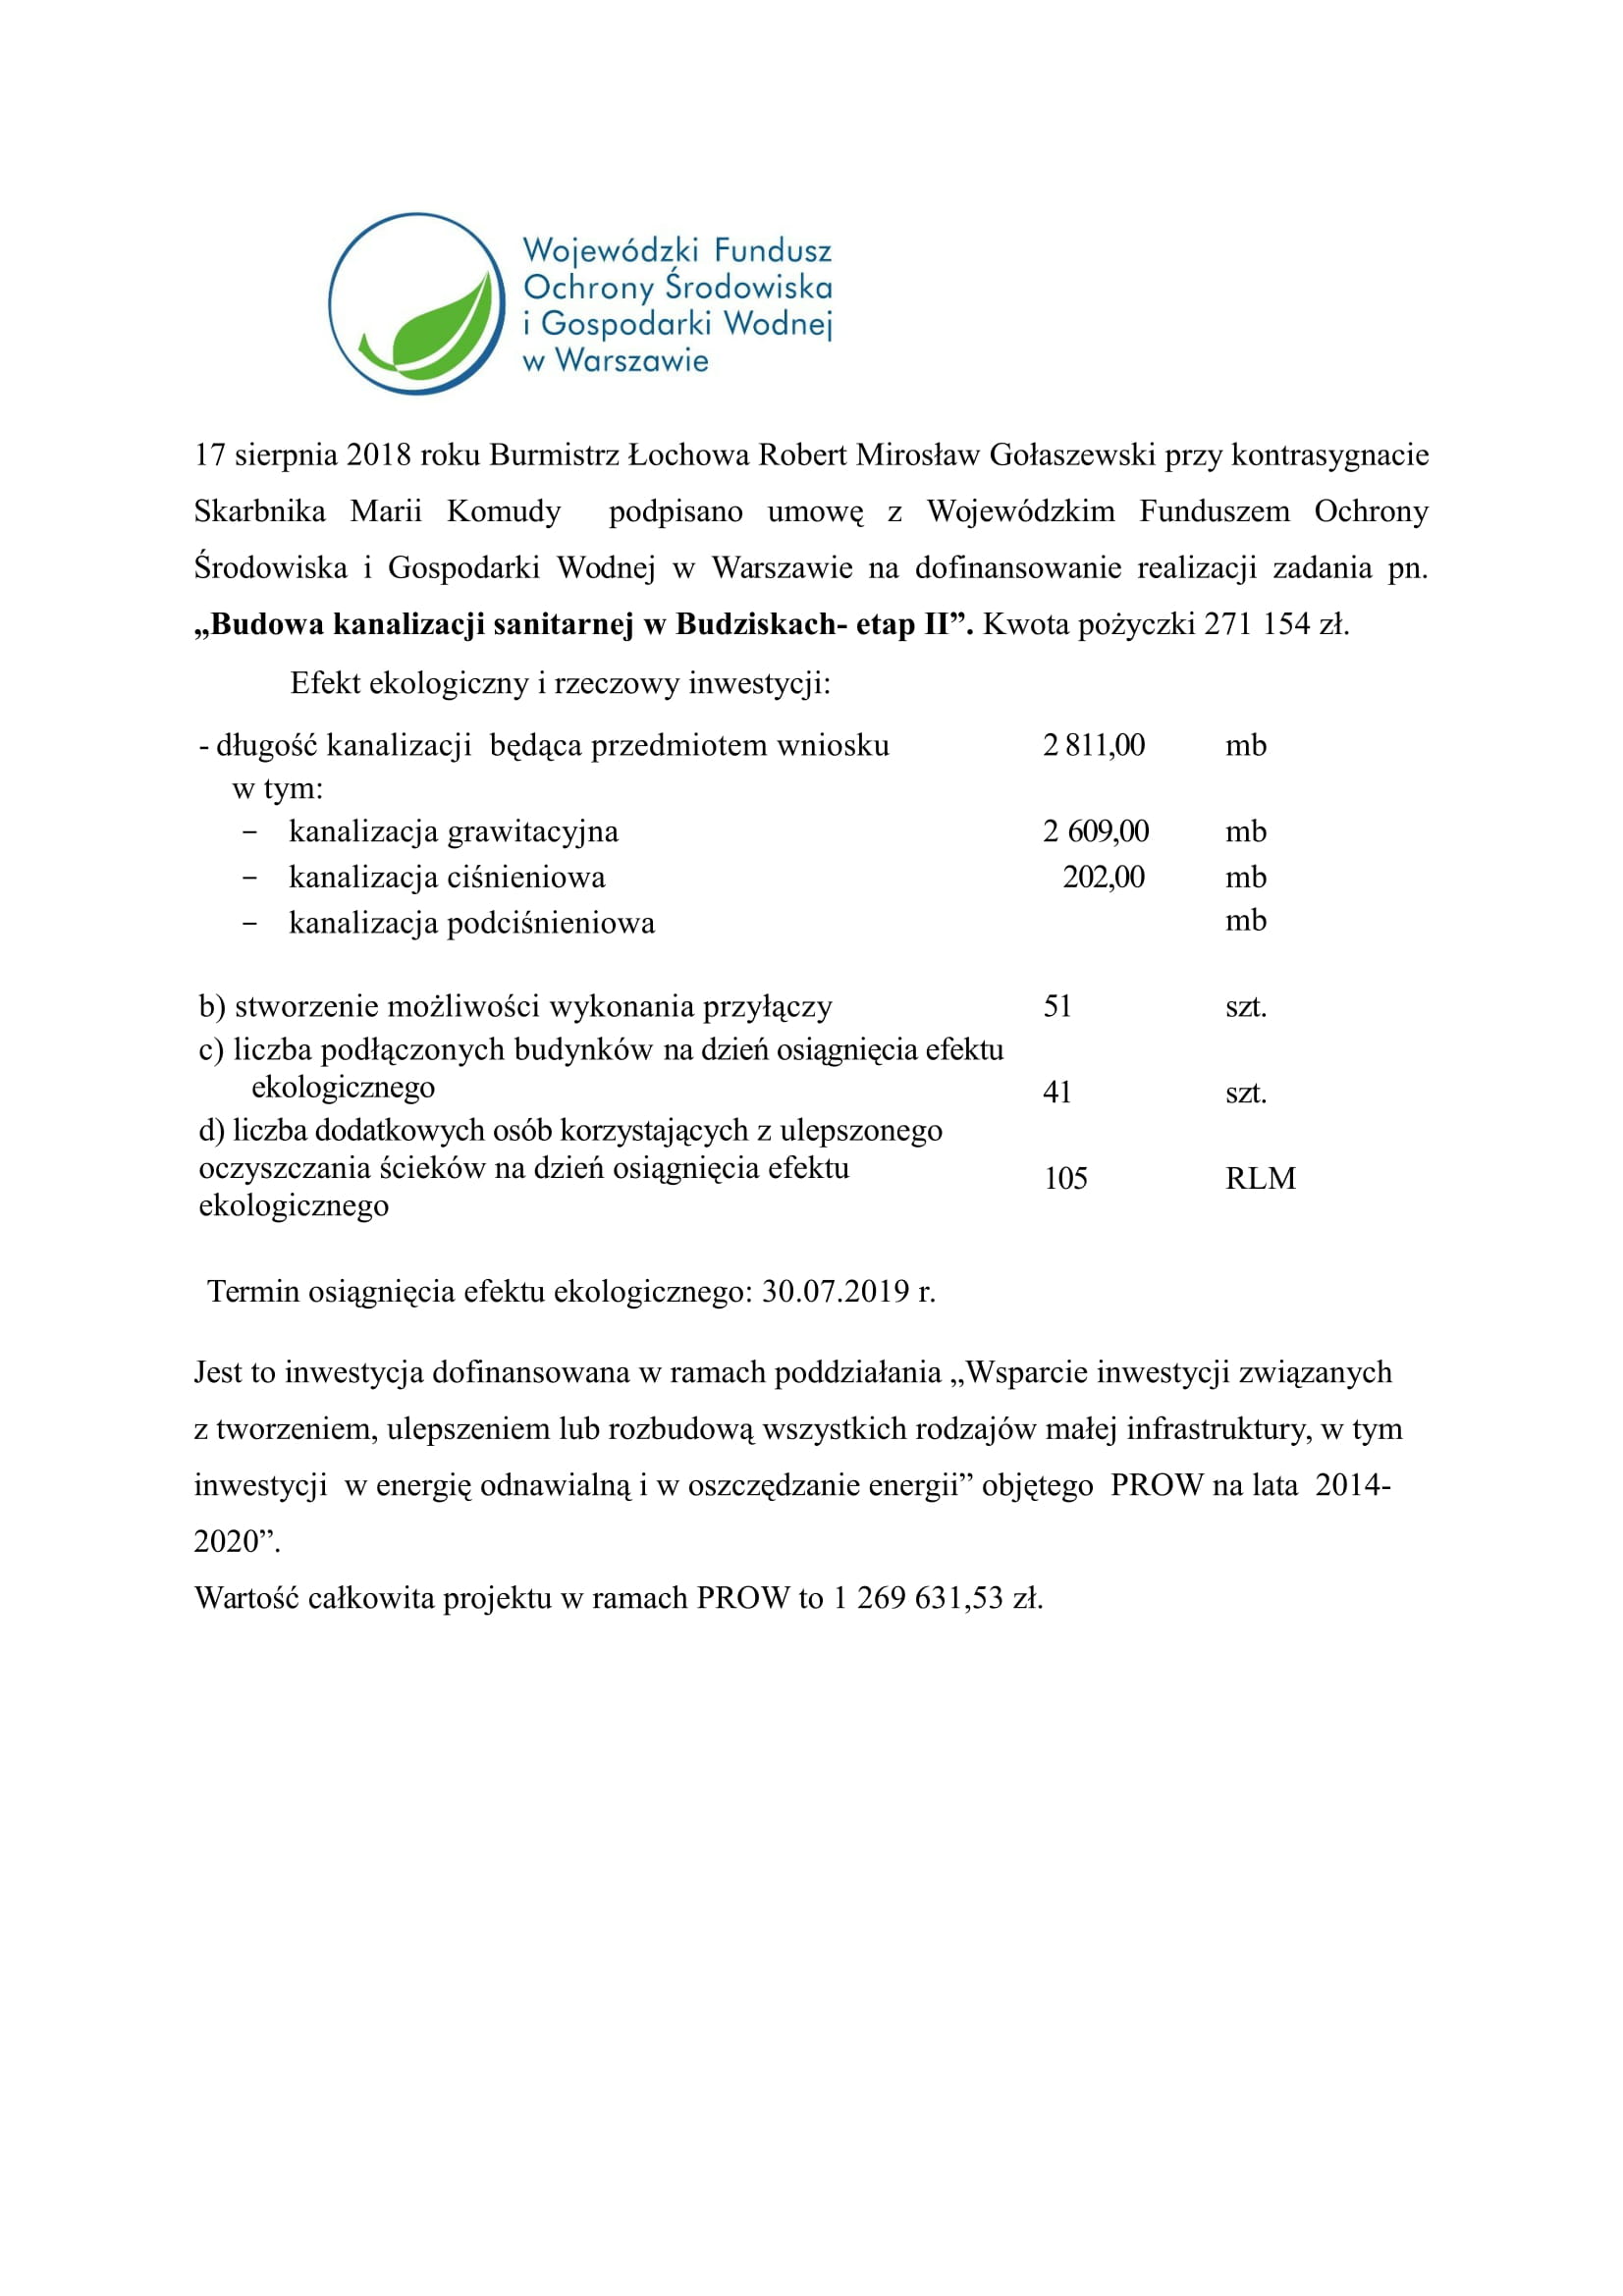 Informacja o dofinansowaniu realizacji zadania pn. „Budowa kanalizacji sanitarnej w Budziskach- etap II” z pożyczki WFOŚ